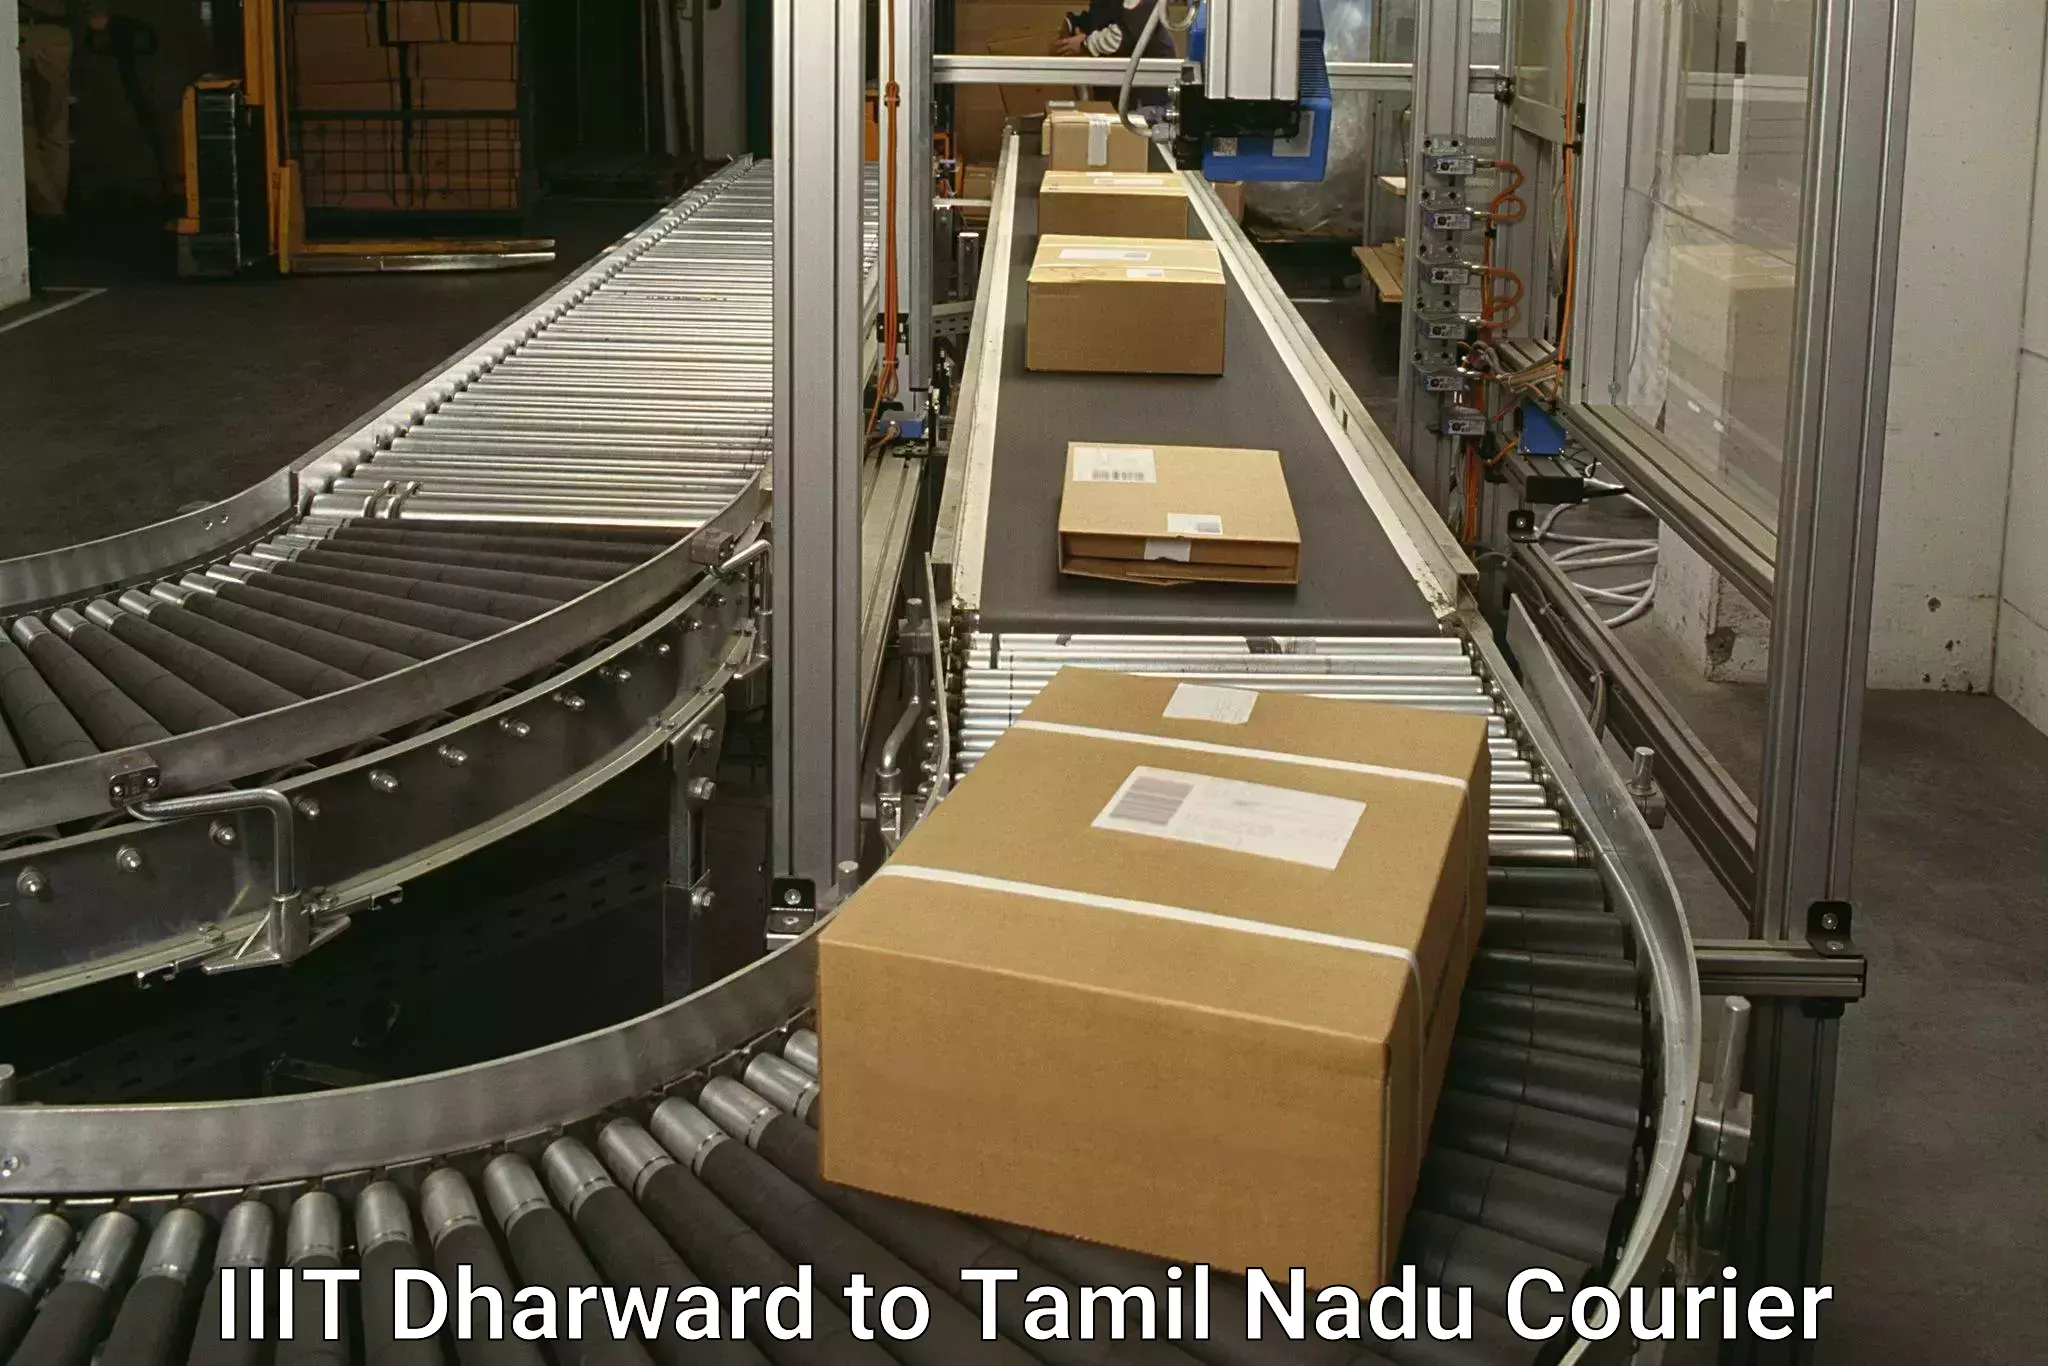 Global shipping solutions IIIT Dharward to Tirukkoyilur